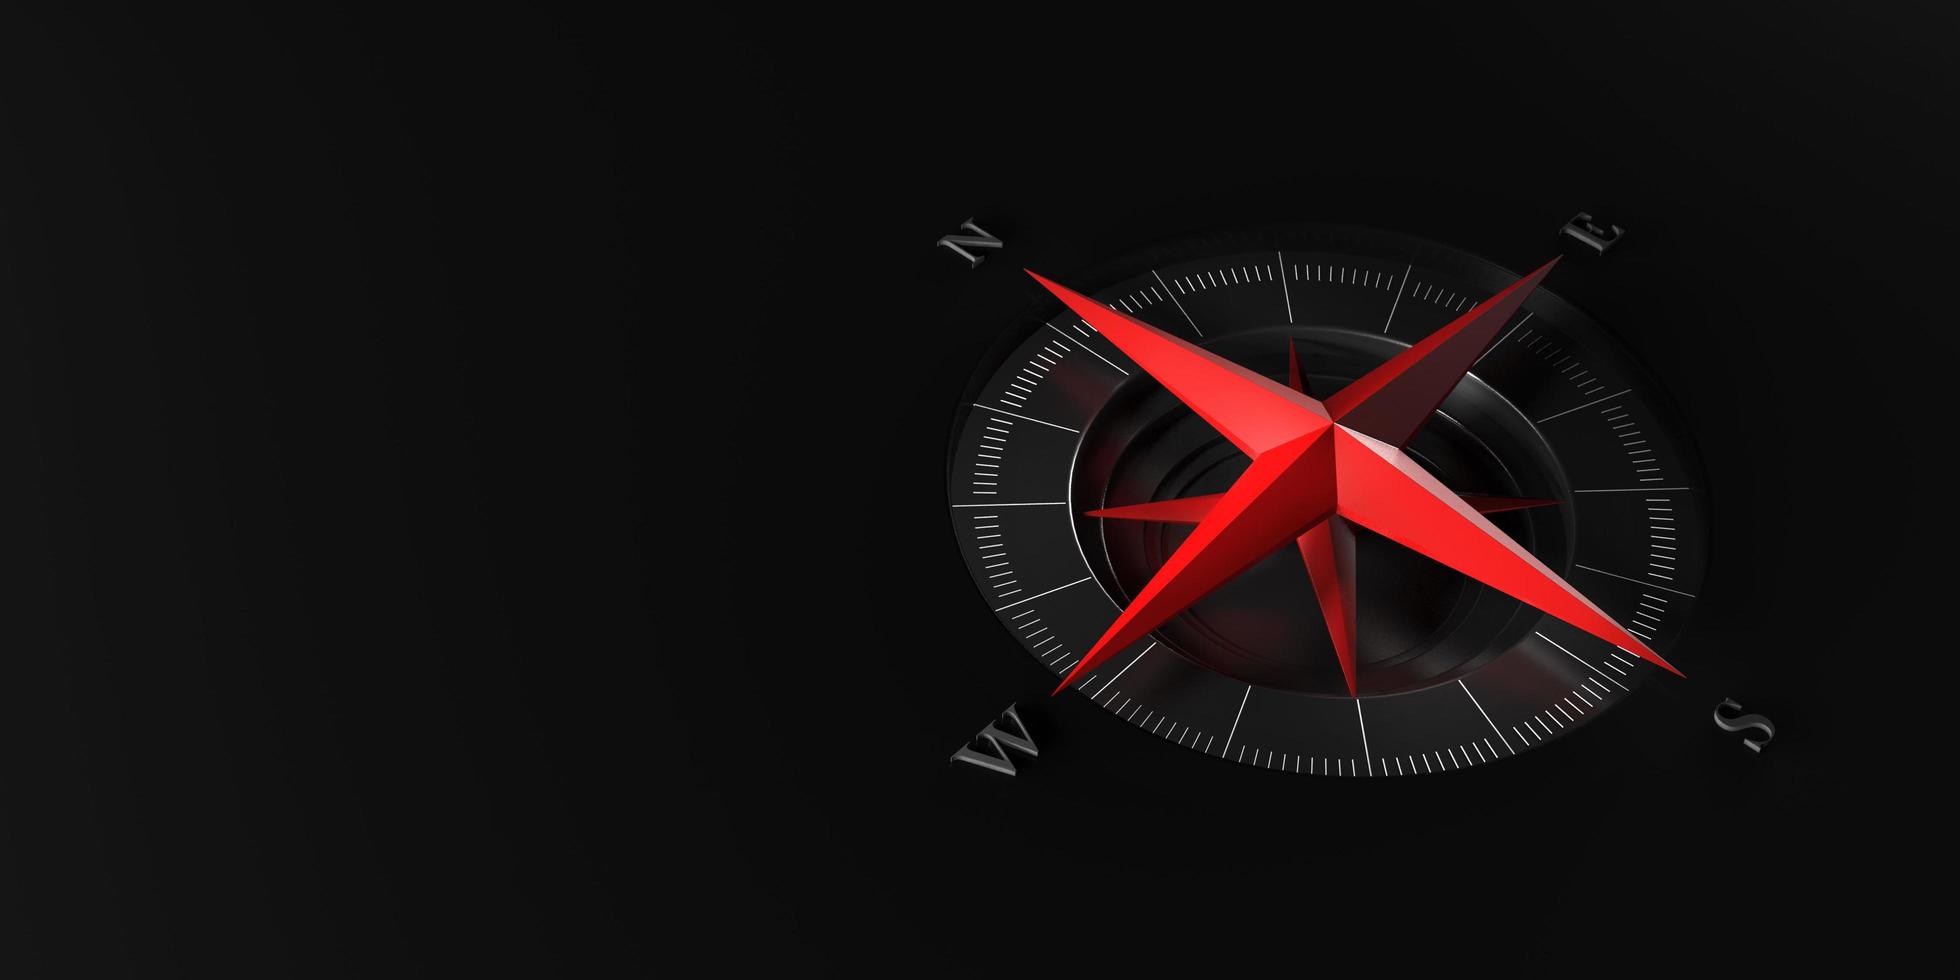 röd modern kompass på svart bakgrund med kopia utrymme för text eller design.3D-rendering foto